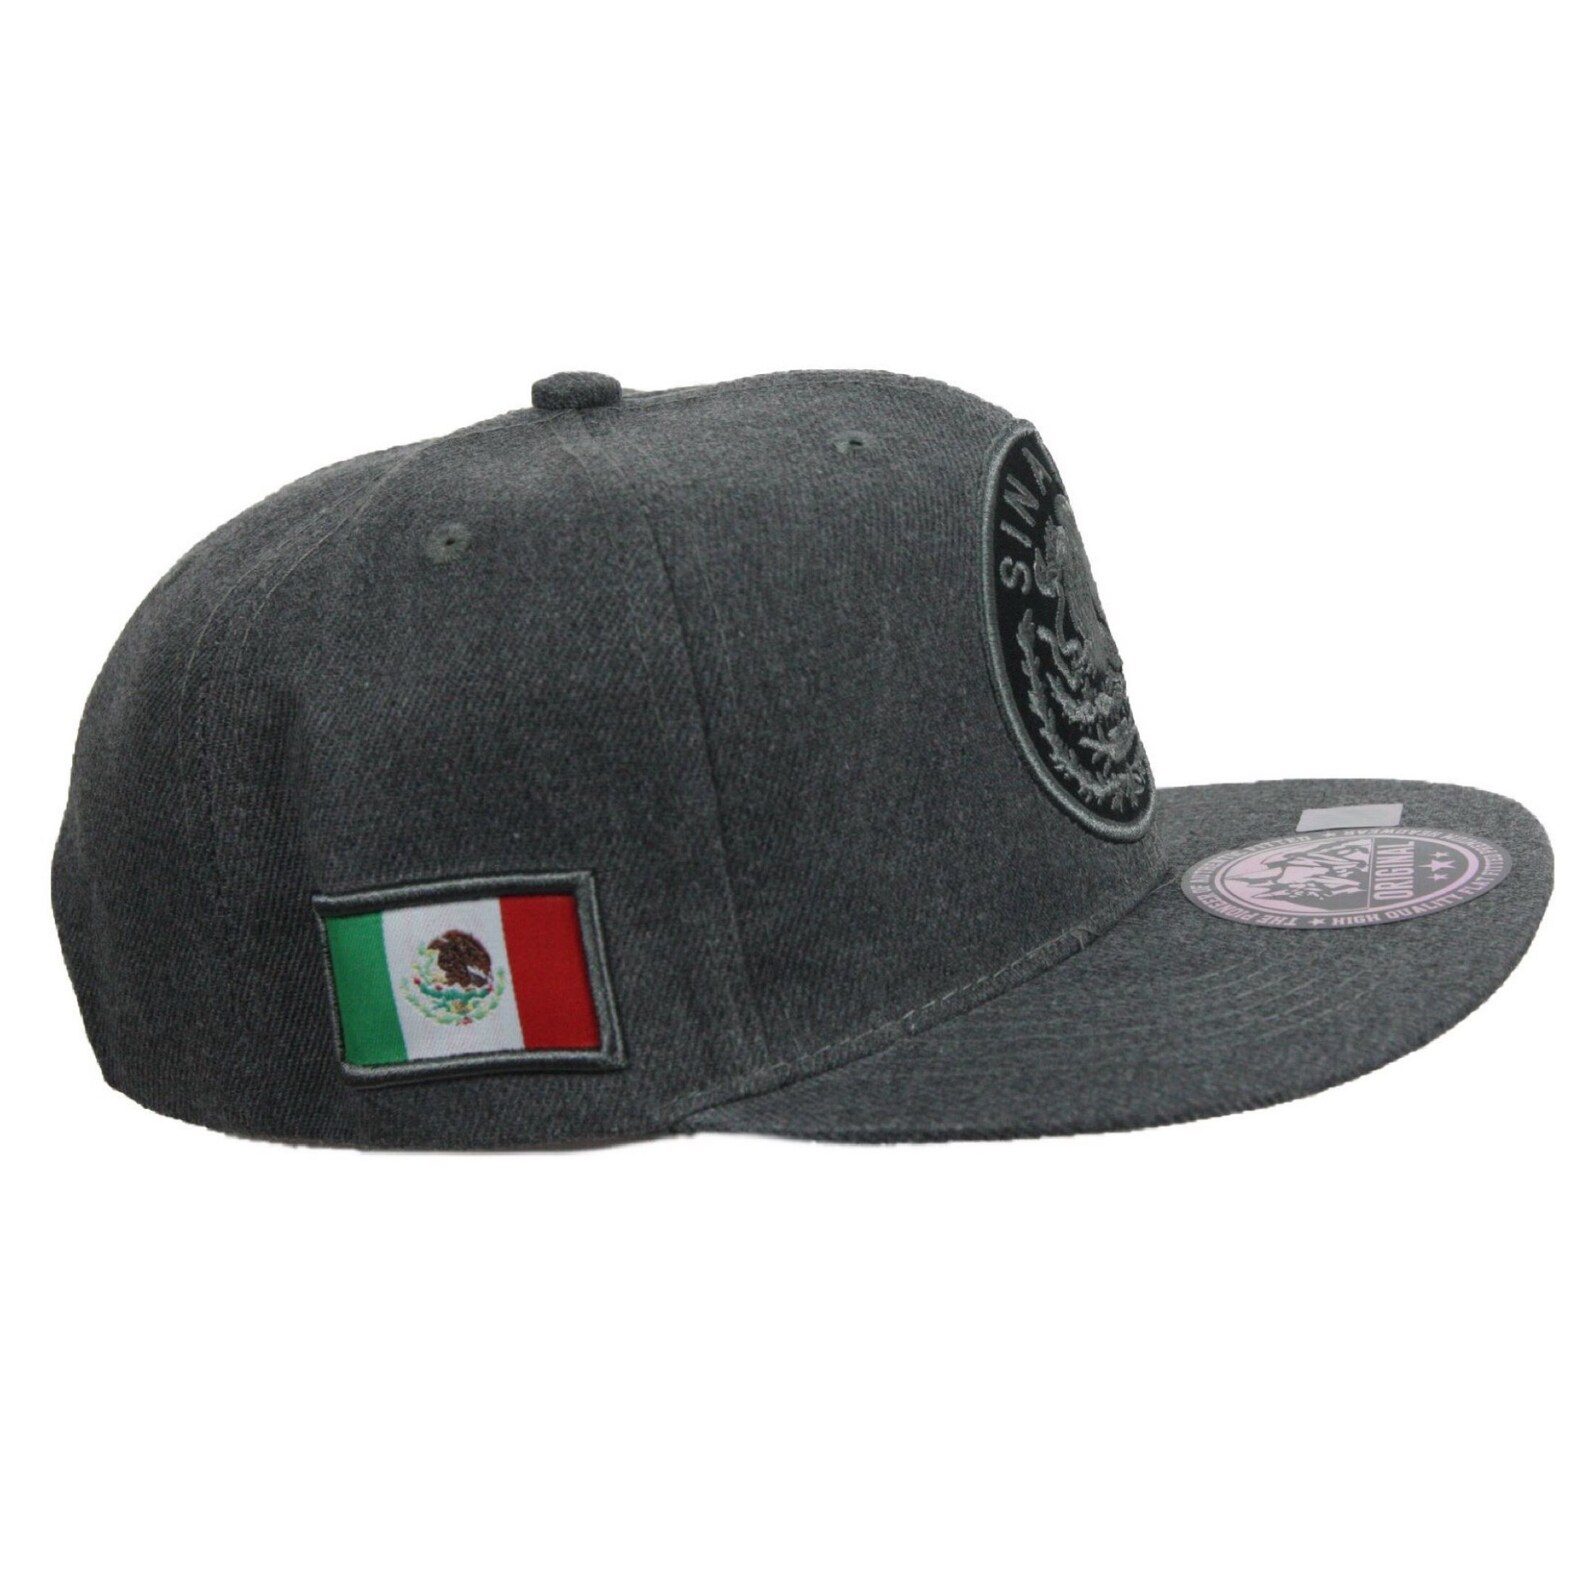 Sinaloa Baseball Cap Mexico Hat Fashion Caps Casual Hats | Etsy